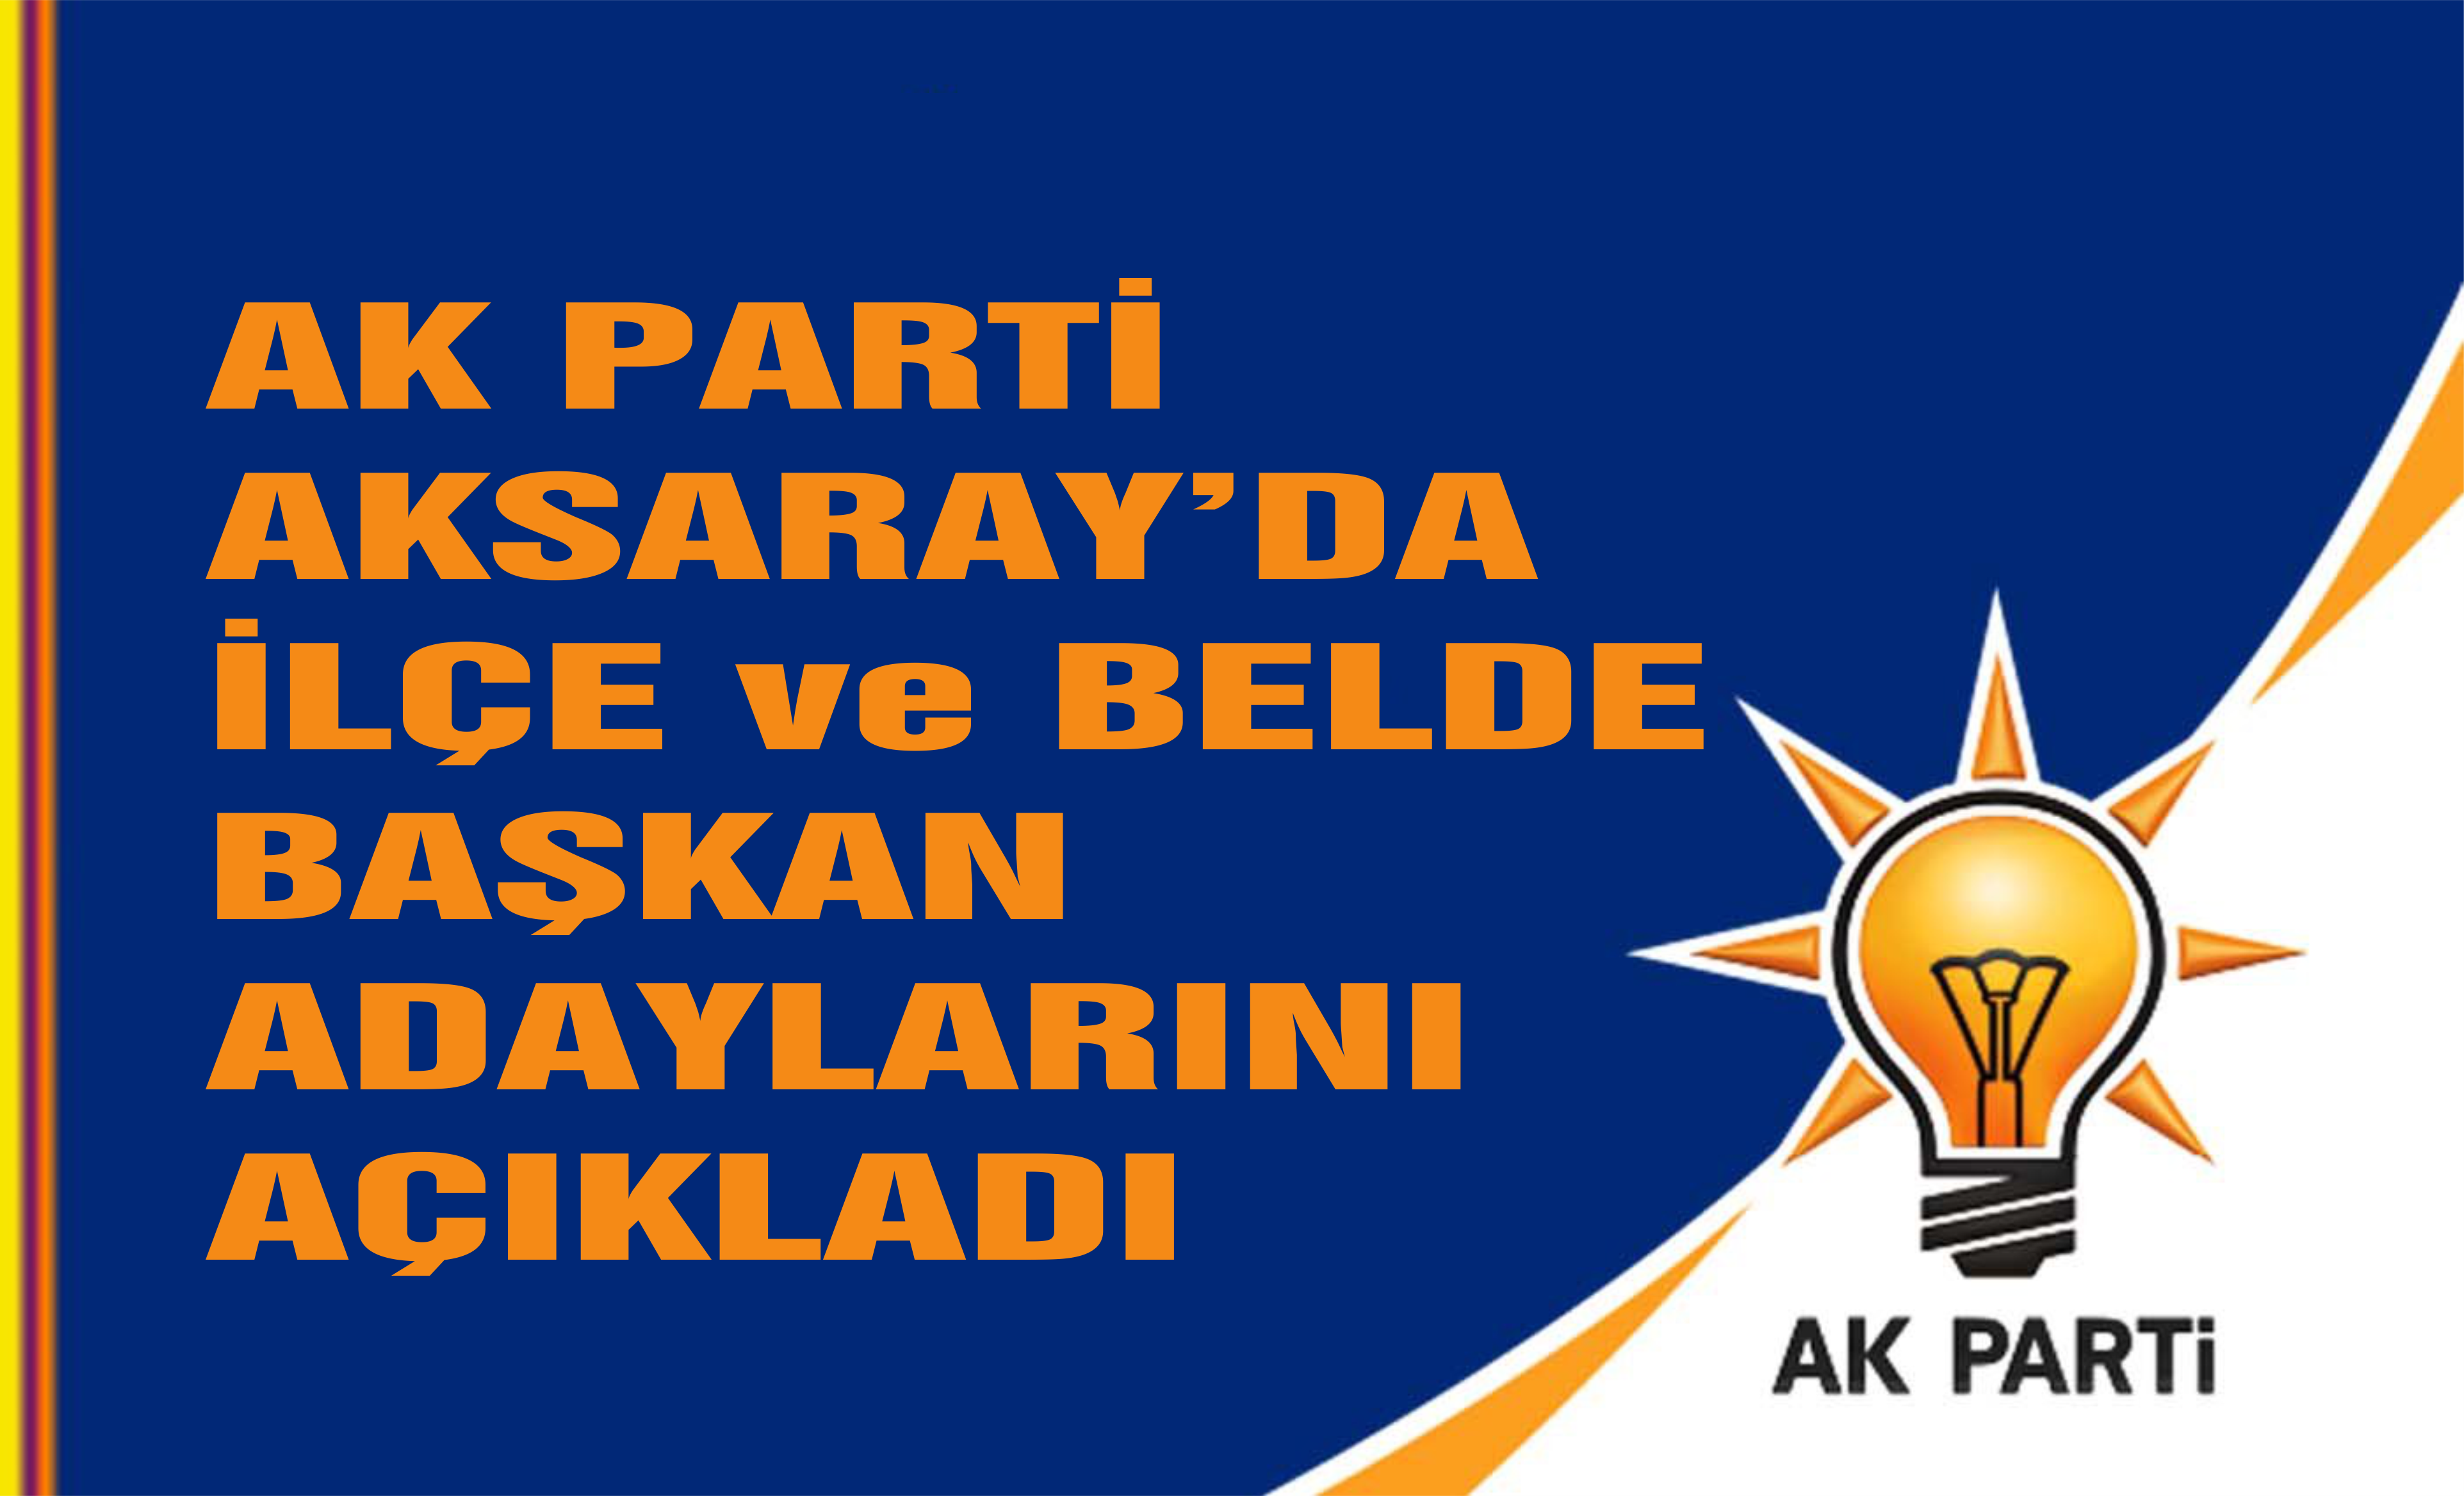 AK Parti Aksaray’da ilçe ve belde belediye başkan adaylarını belirledi